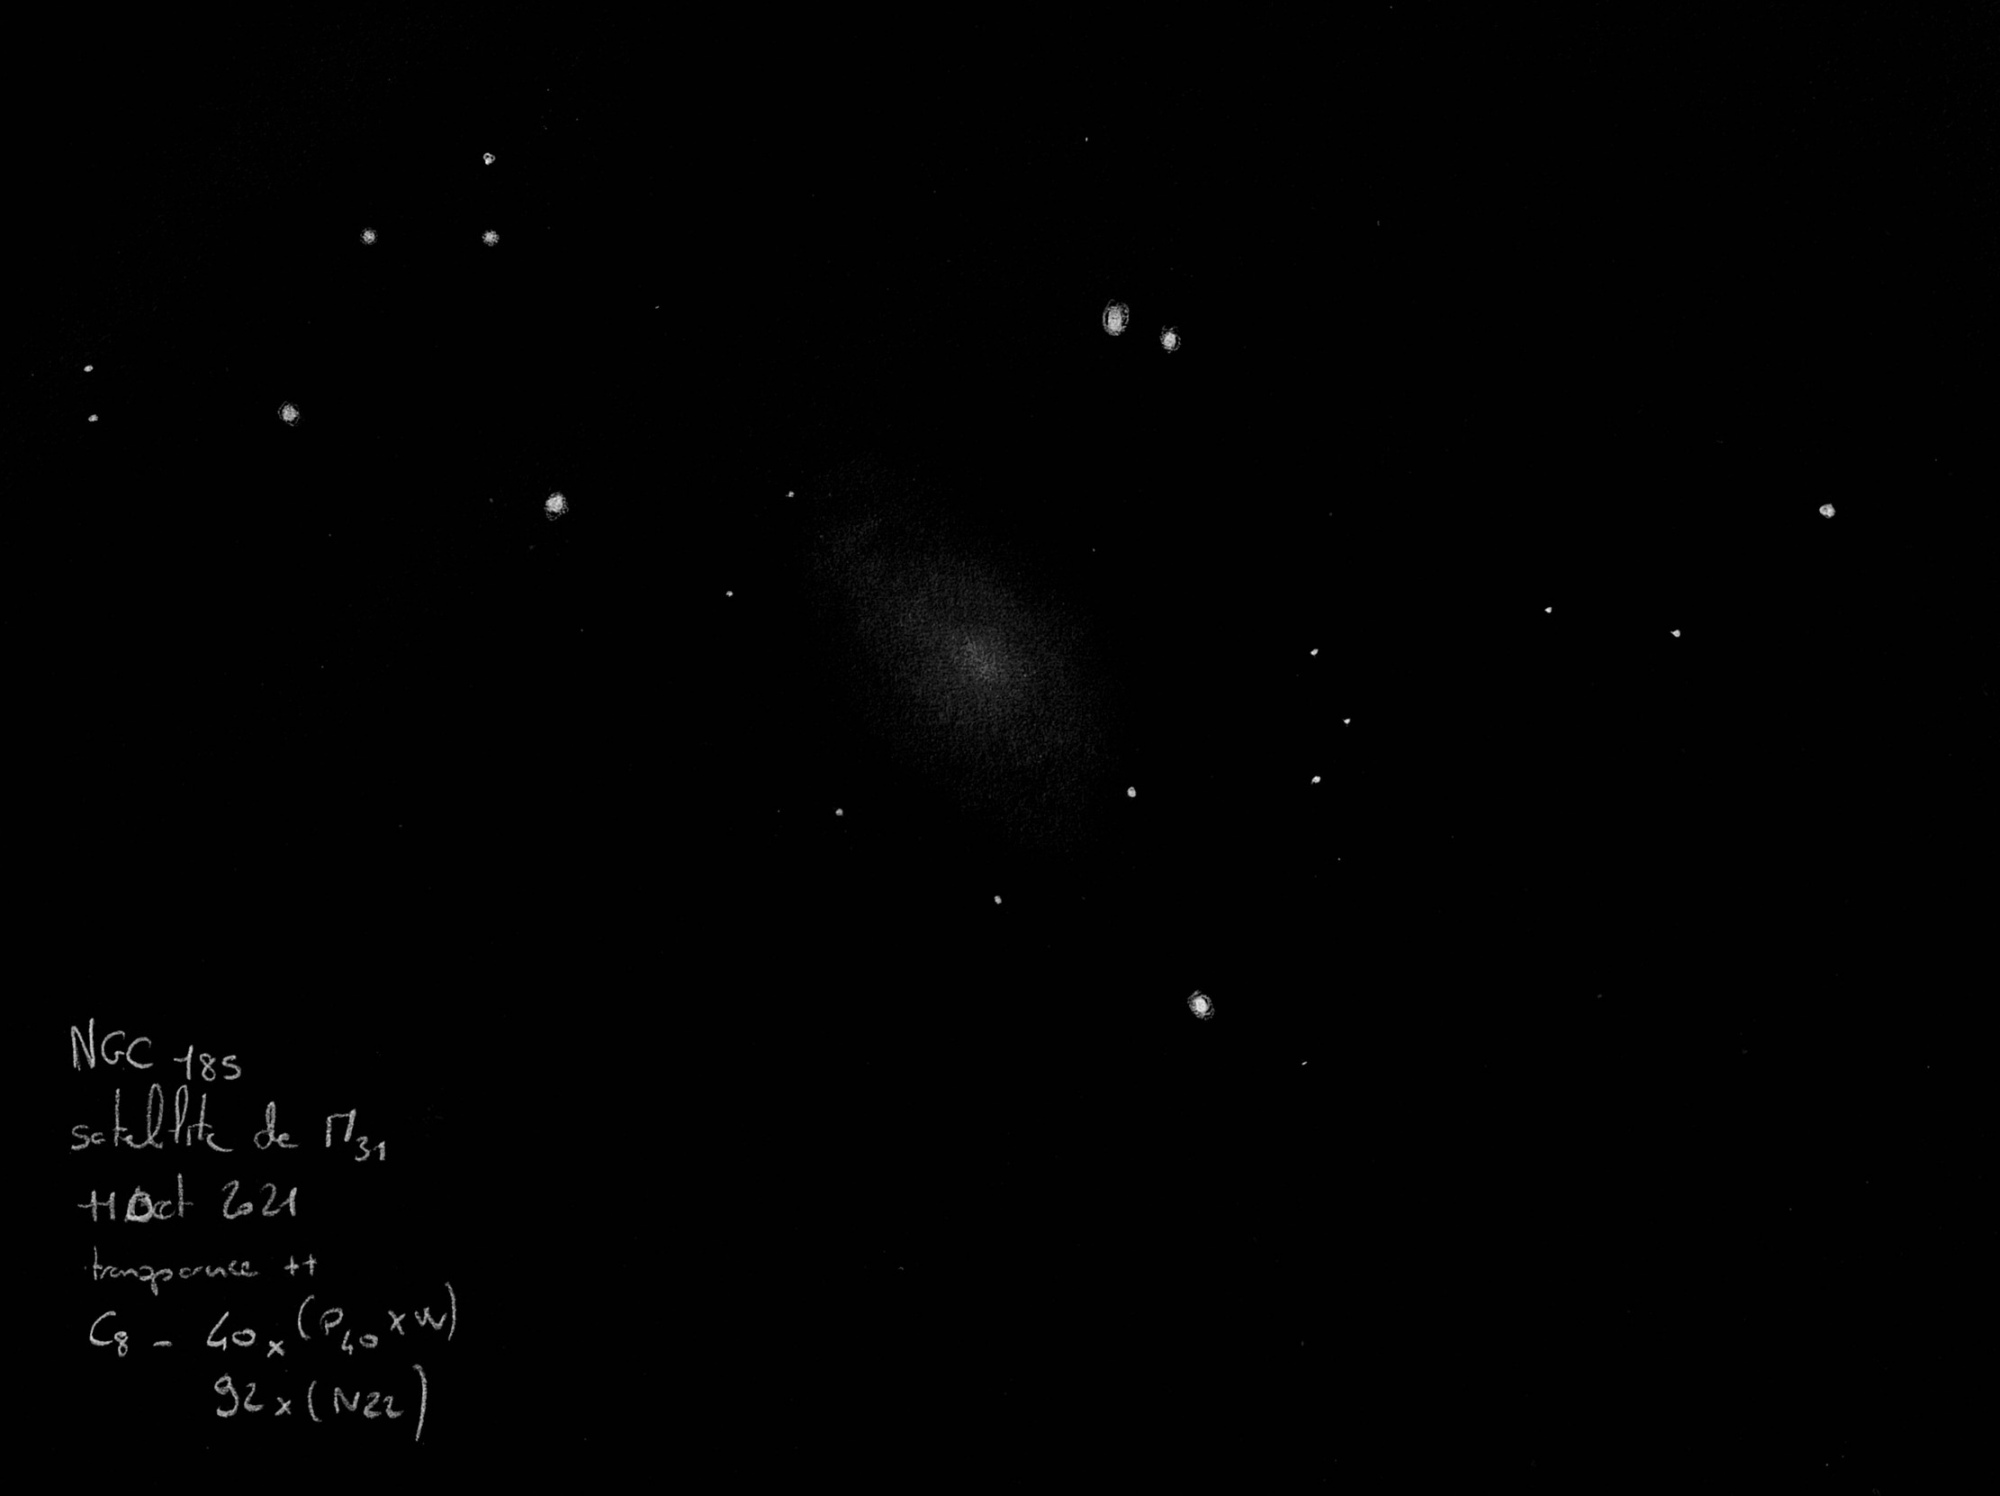 616765015e410_NGC18511oct2021.thumb.jpeg.b2f9fde3a21687ec211ed31db6c74ddc.jpeg